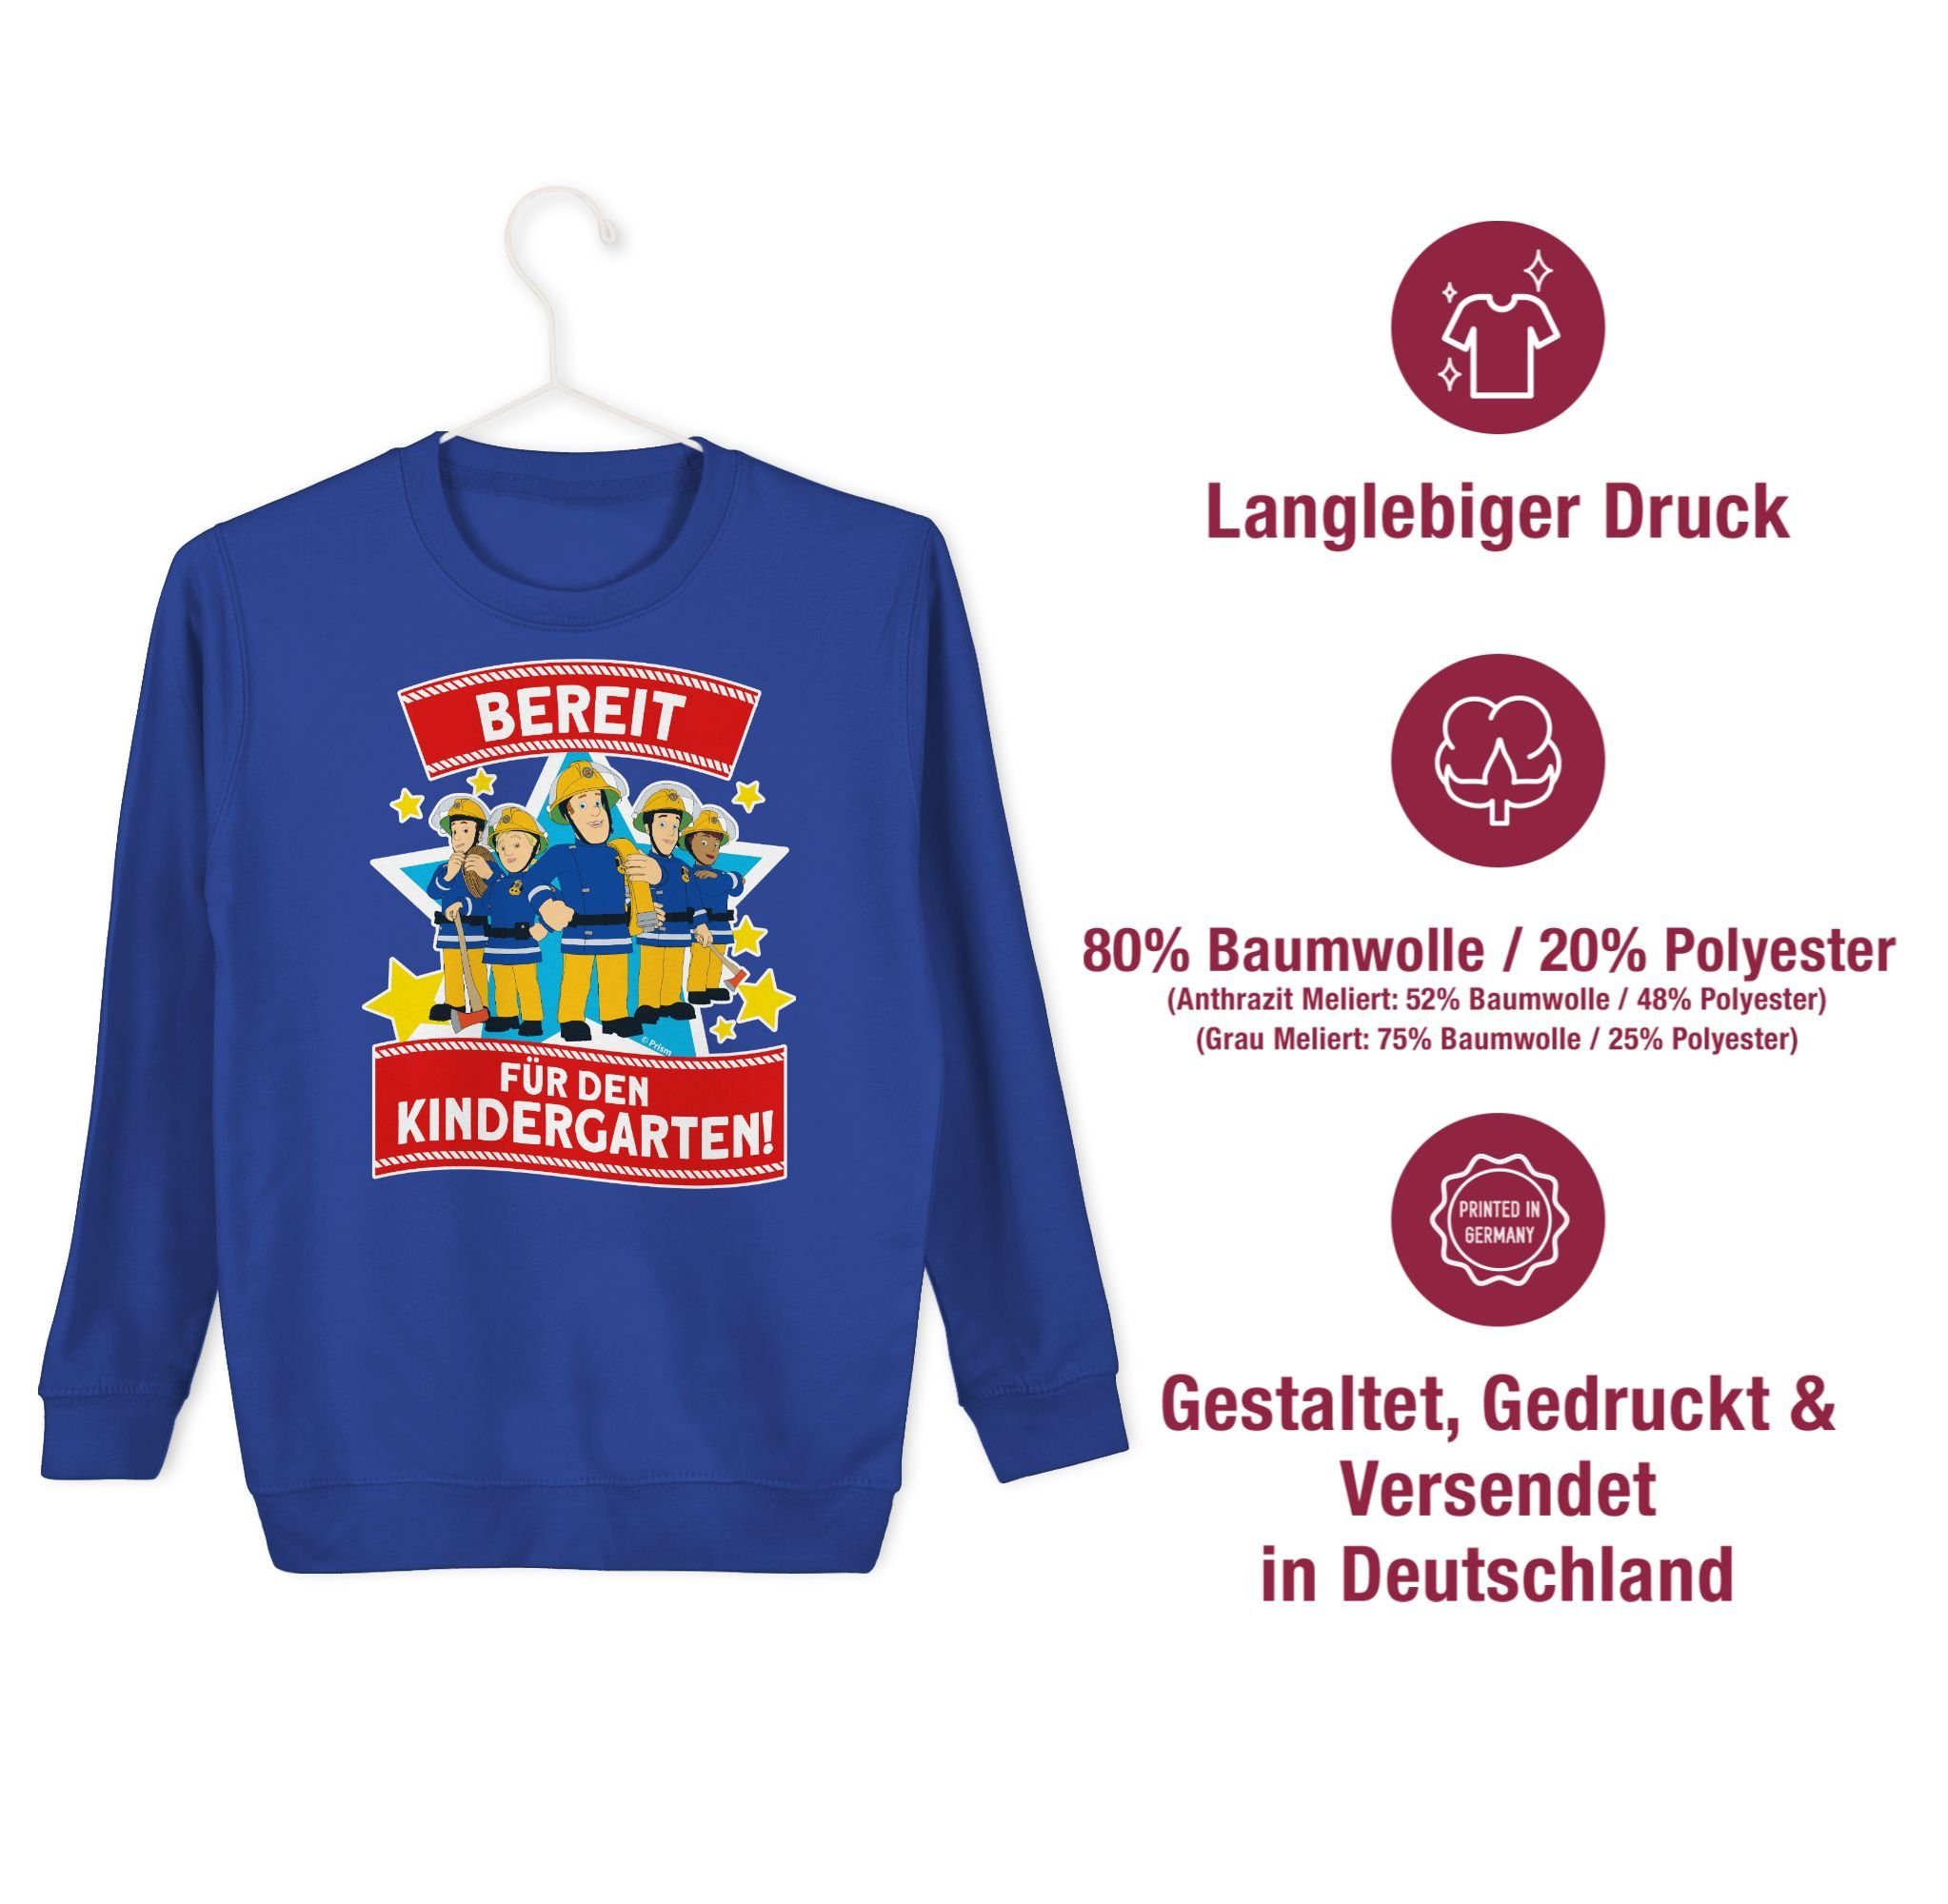 Shirtracer Sweatshirt Bereit für Sam Royalblau 1 Mädchen Feuerwehrmann Team Kindergarten! den Sam - &